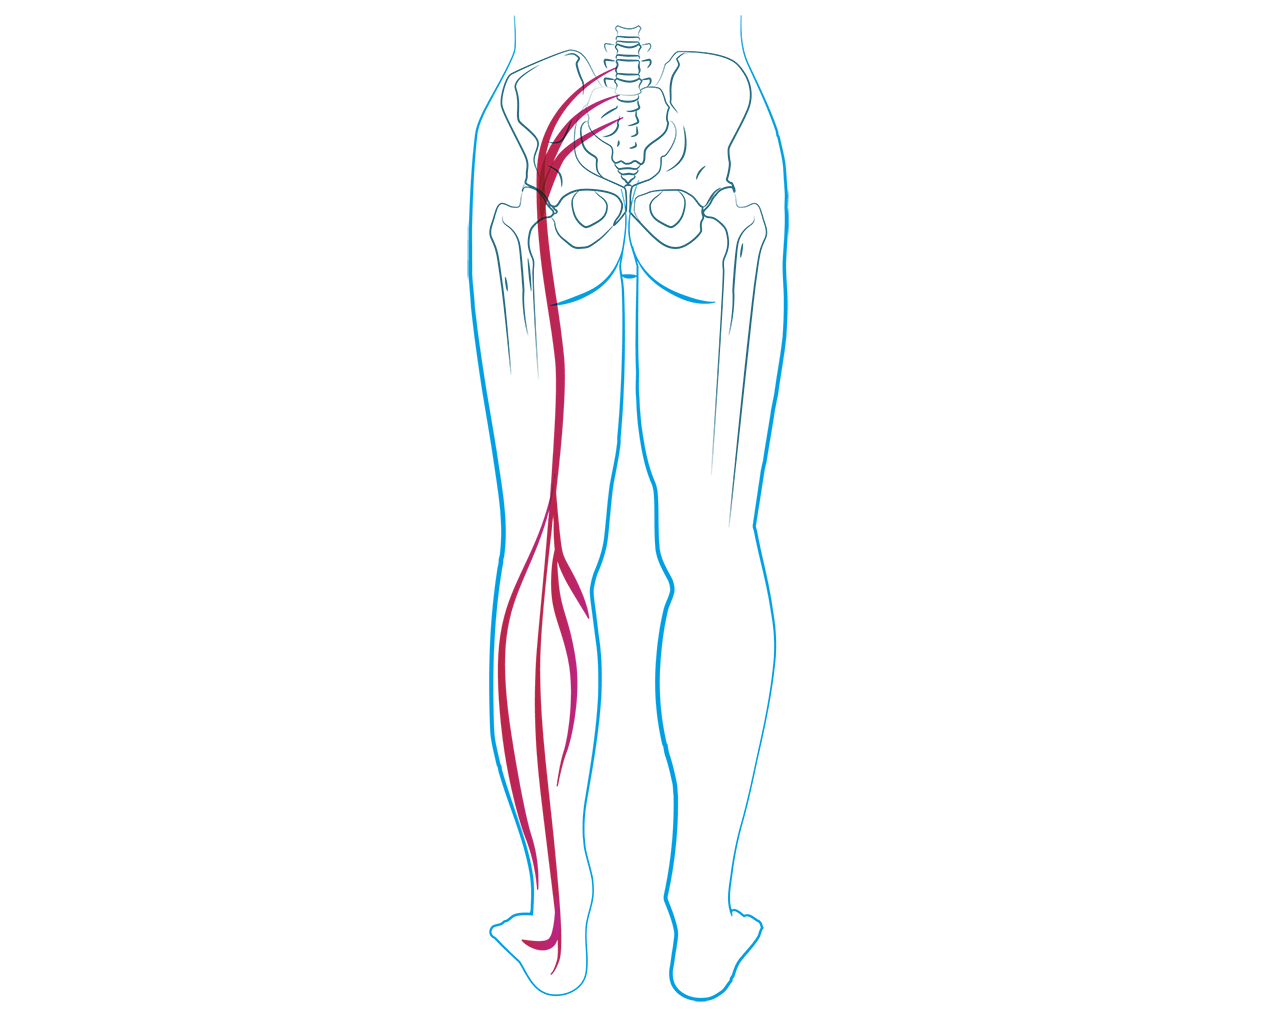 Rwa kulszowa, nerw kulszowy, noga, nerwy, układ nerwowy